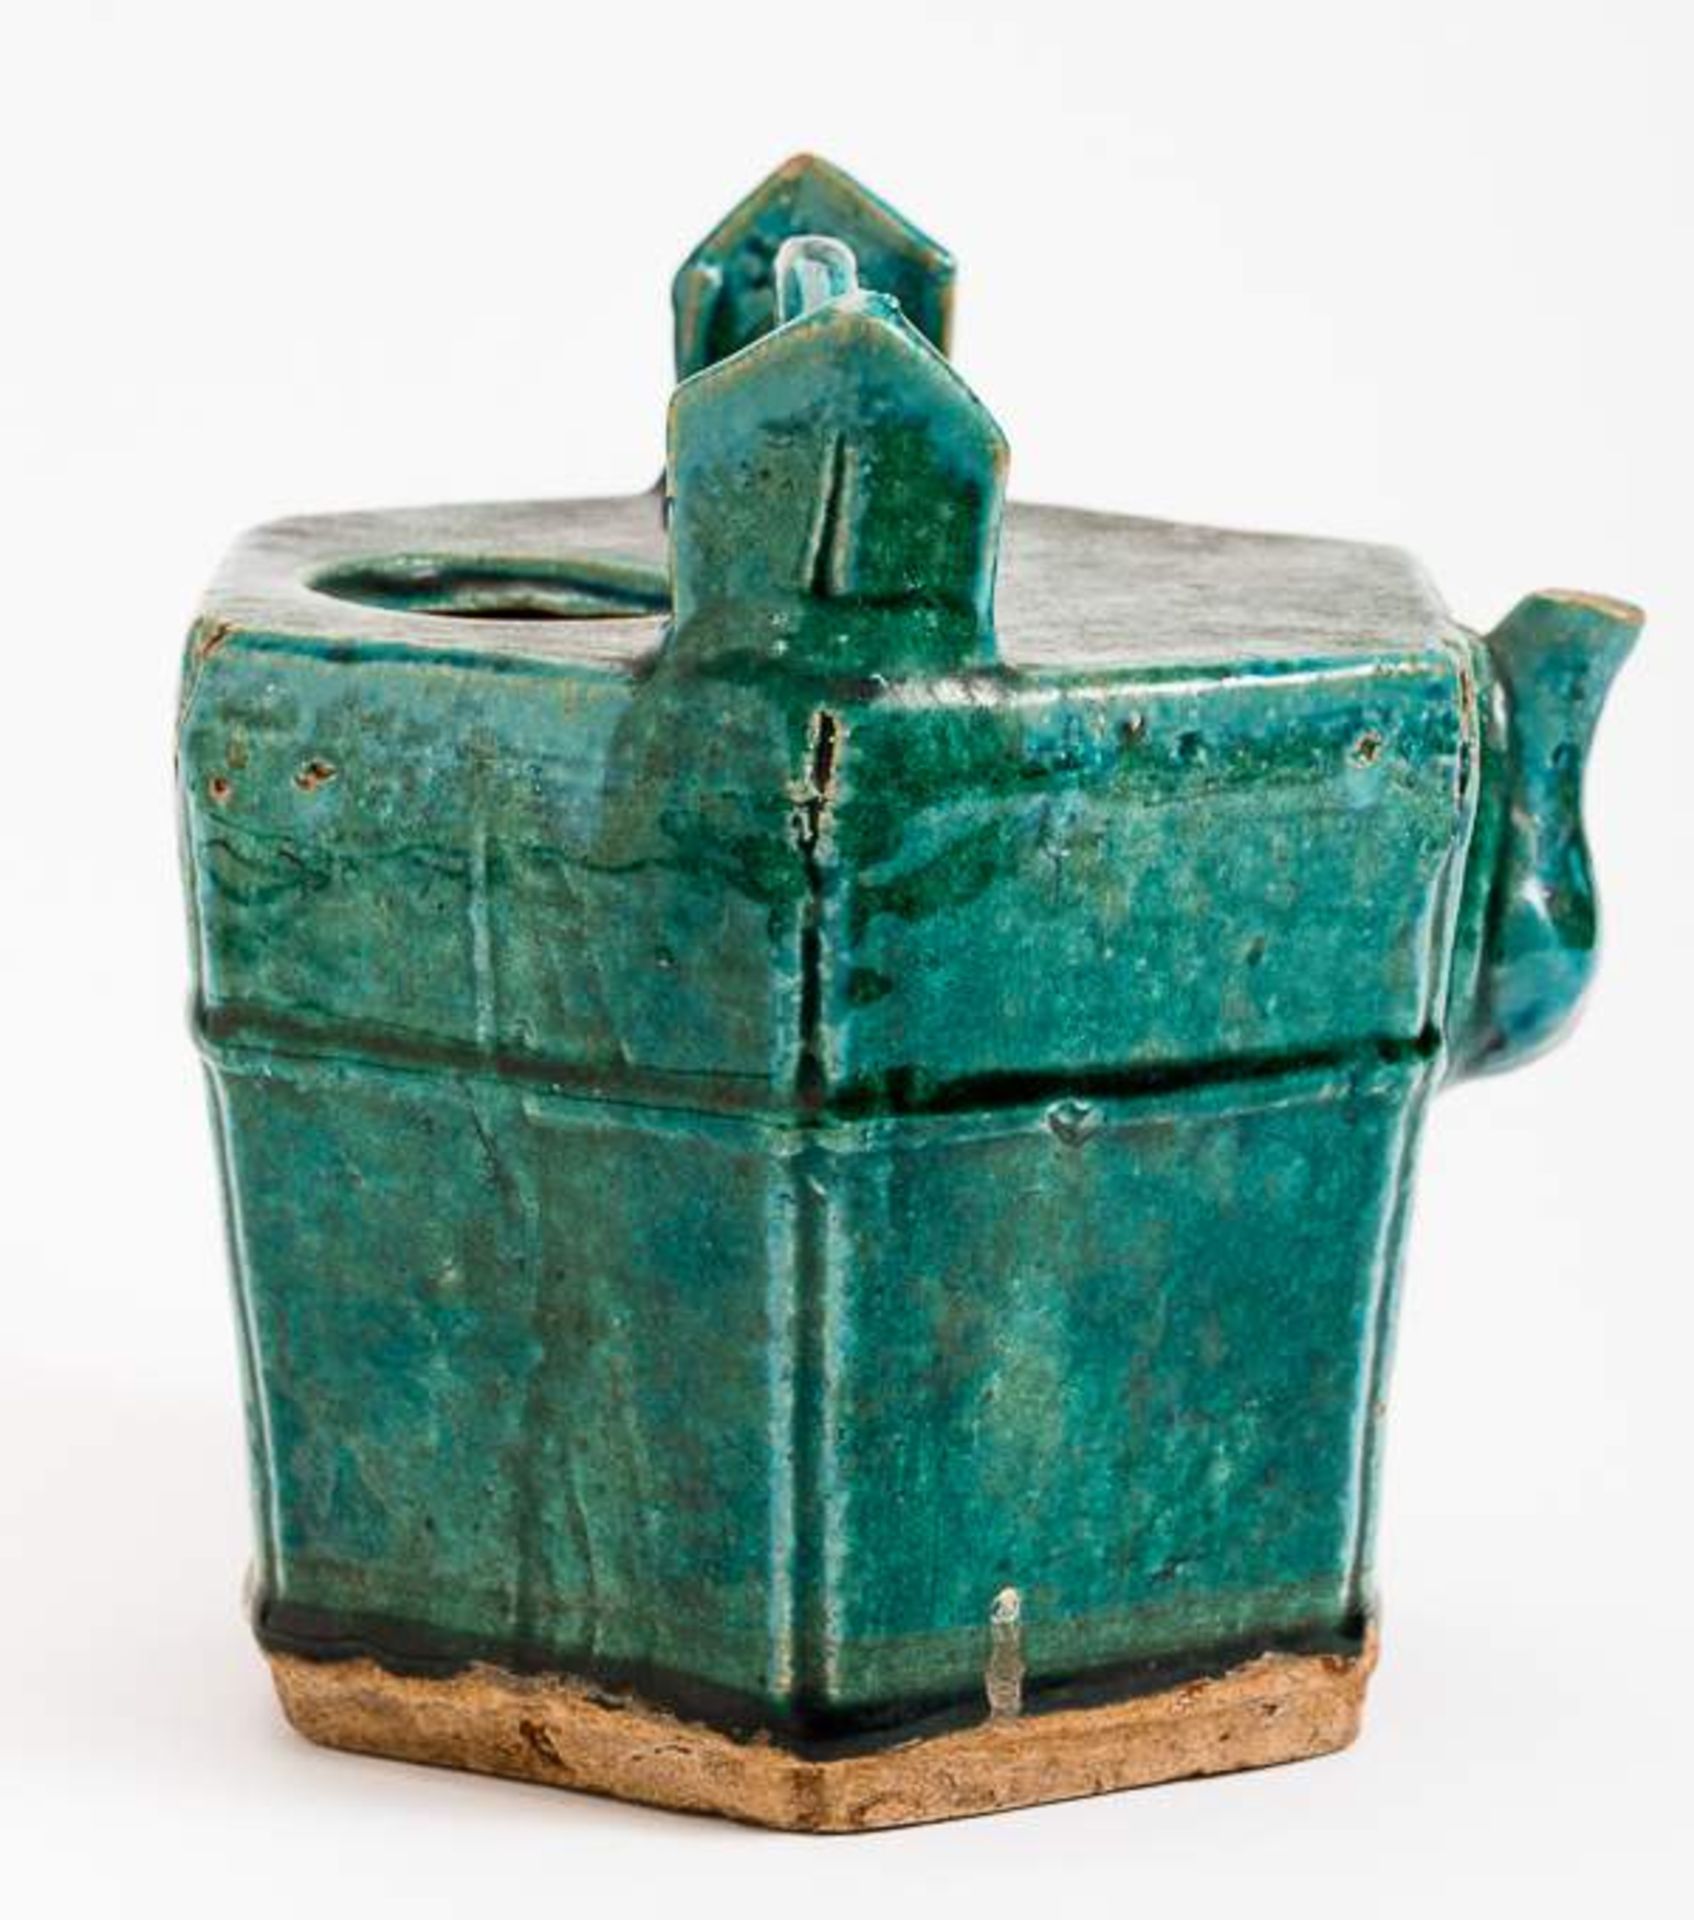 GEFÄSS IN FORM EINES WASSEREIMERS Grün glasierte Keramik. China, Qing, vermutlich 17. Jh. Dieses - Image 9 of 15